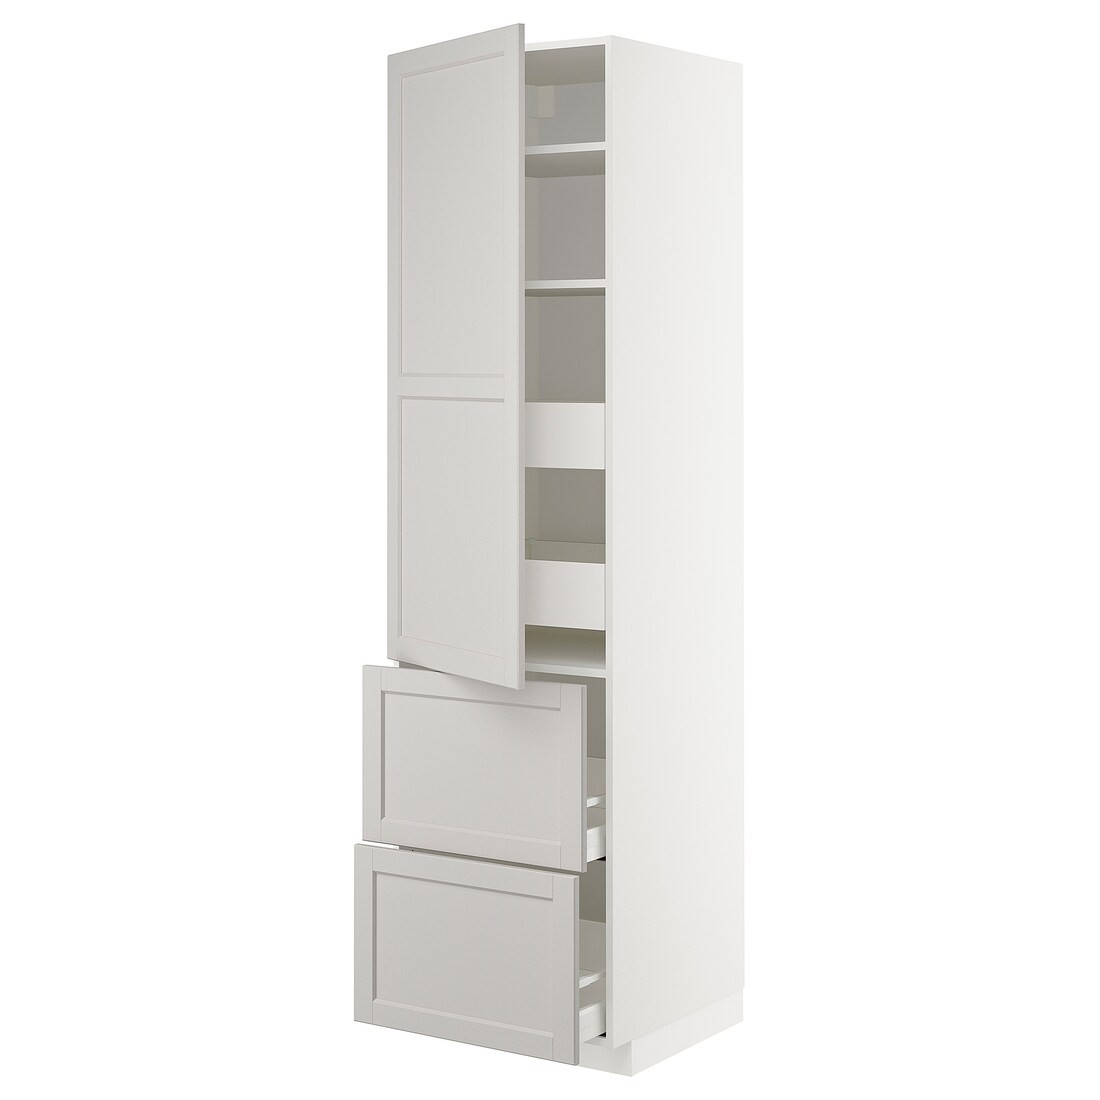 IKEA METOD МЕТОД / MAXIMERA МАКСИМЕРА Высокий шкаф с полками / ящиками, белый / Lerhyttan светло-серый, 60x60x220 см 79386787 793.867.87